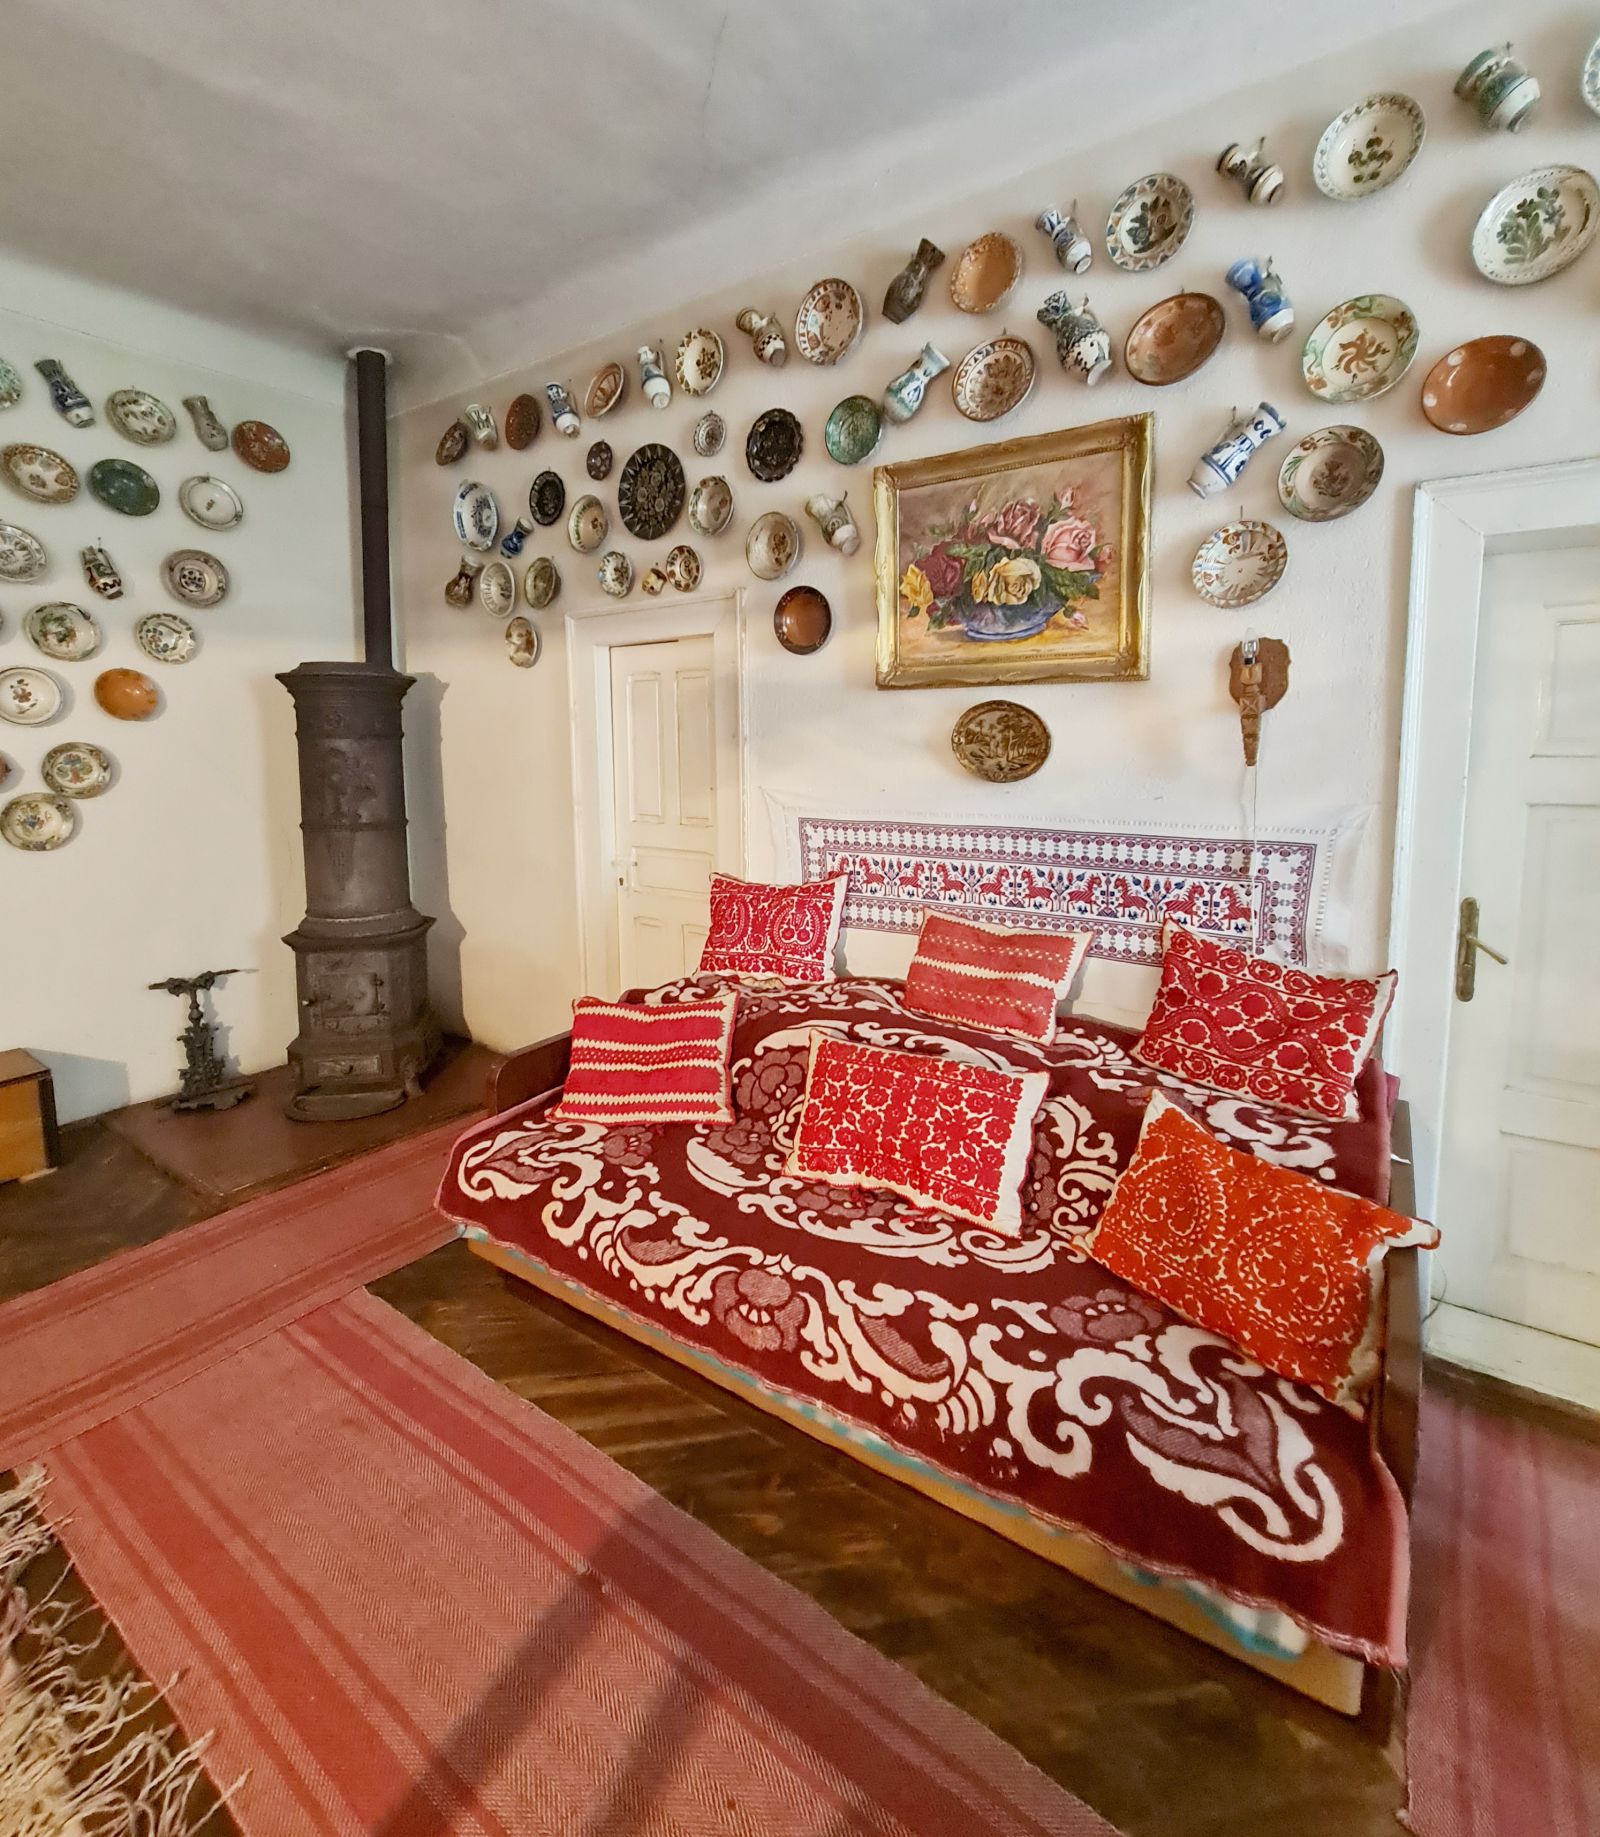 Într-o parte o sofa așa cum exista în multe case țărănești, decorată cu multe perne și nelipsita cuvertură.